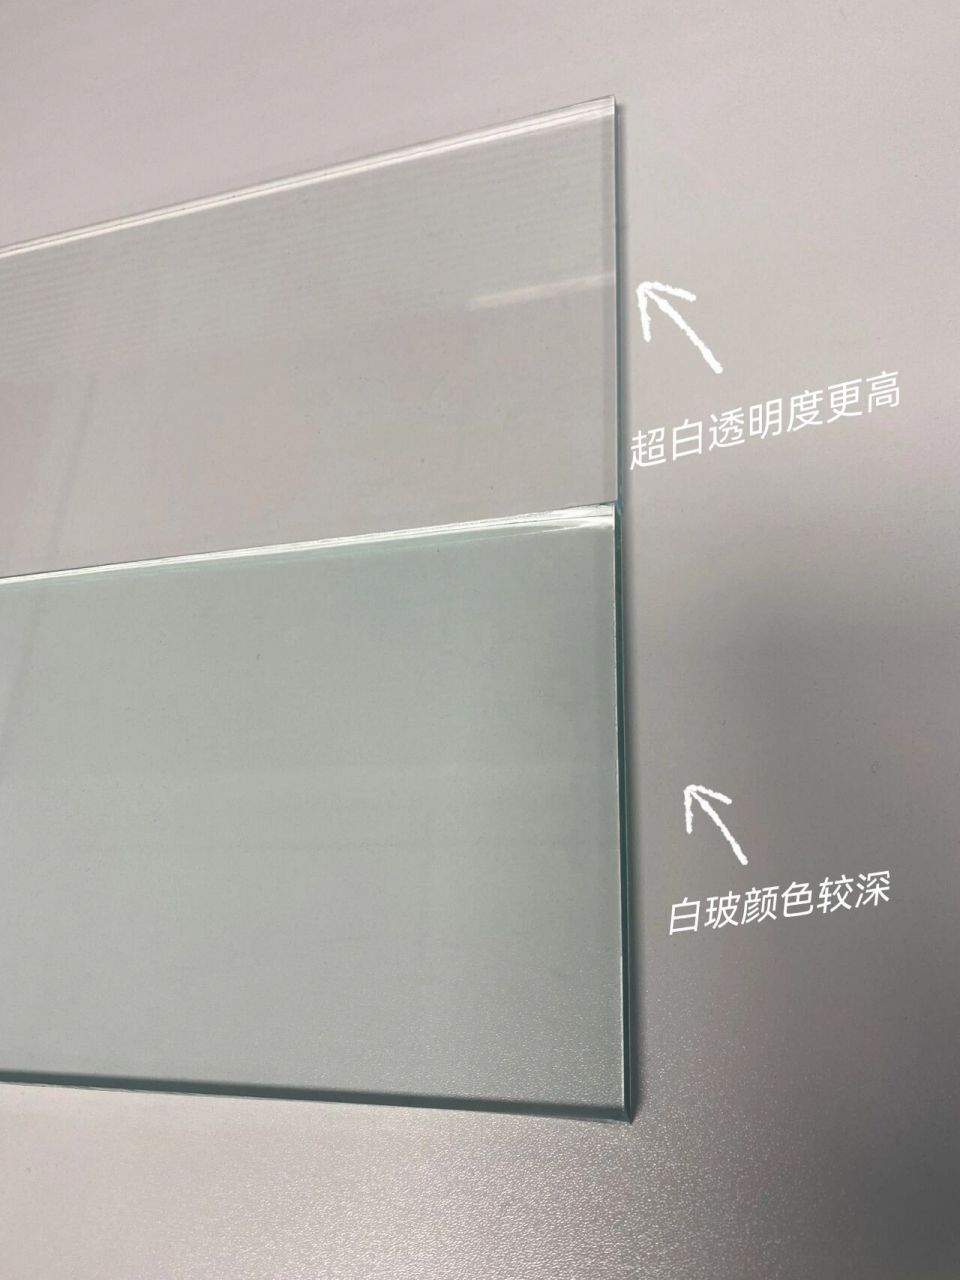 白玻和超白玻都属于浮法玻璃原片,钢化后可应用于各种家居场所78